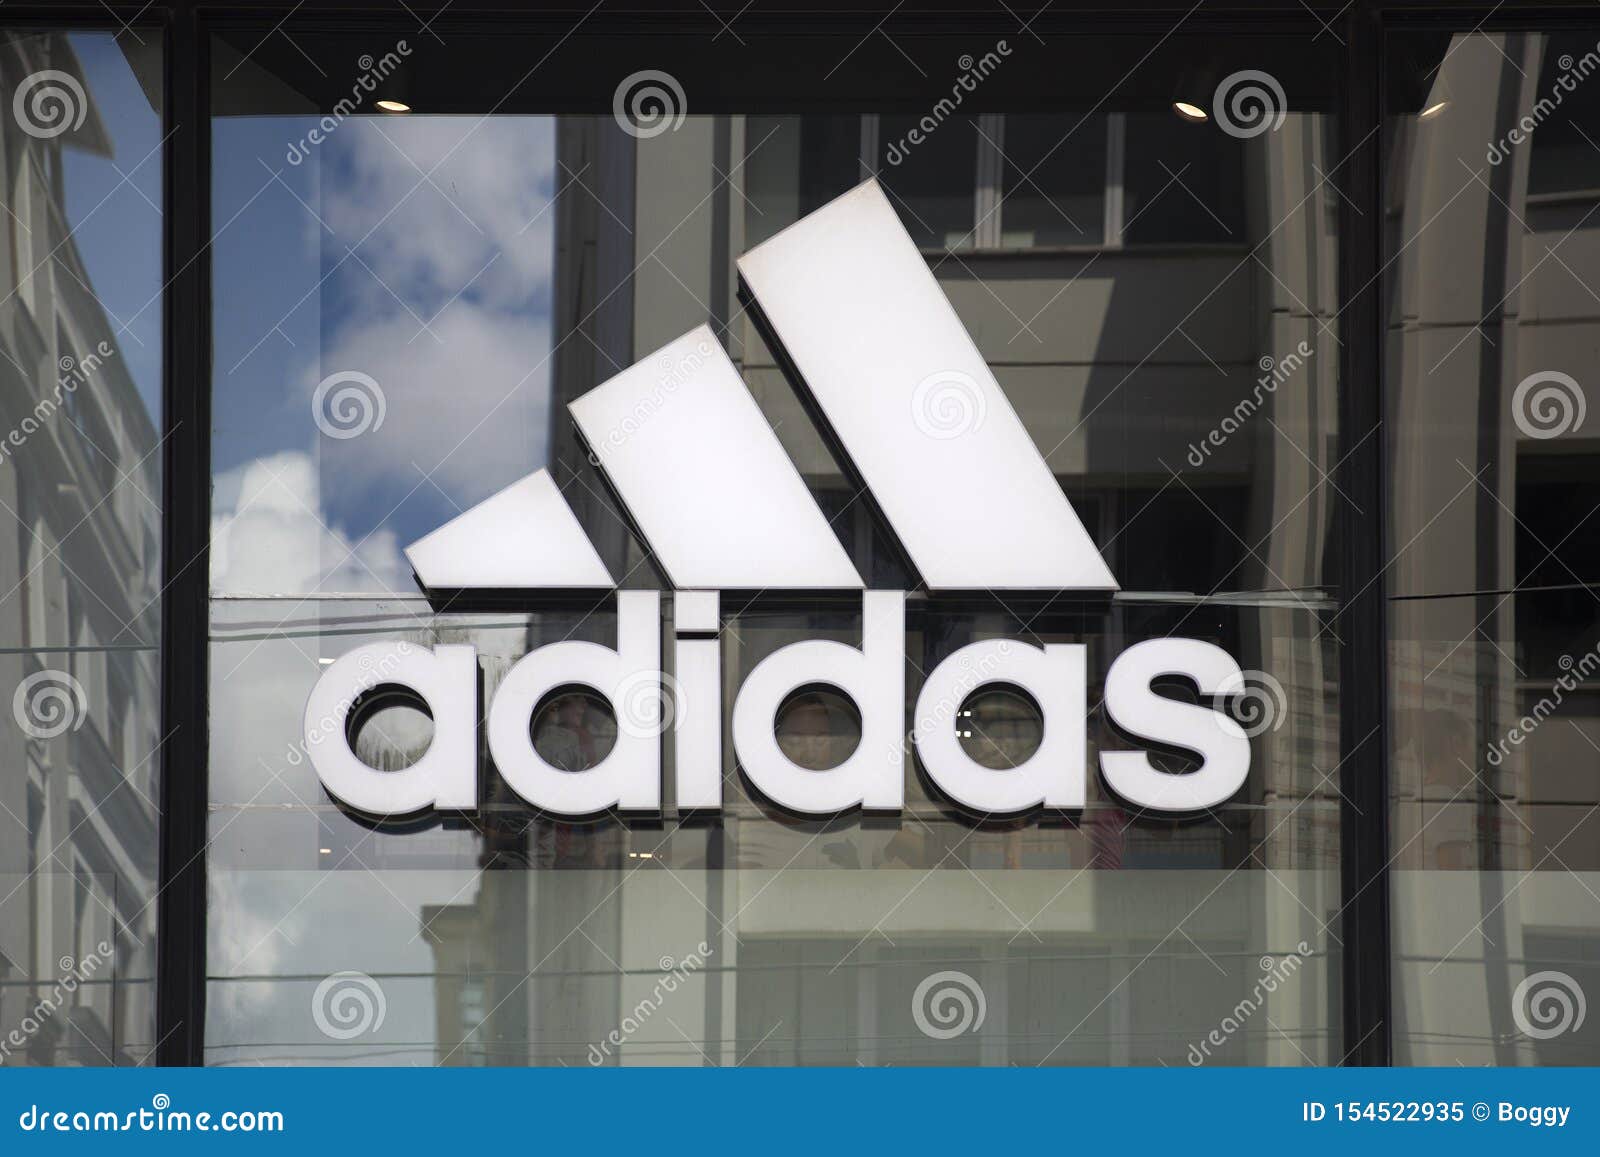 Tienda Adidas imagen editorial. Imagen de adidas, tienda - 154522935